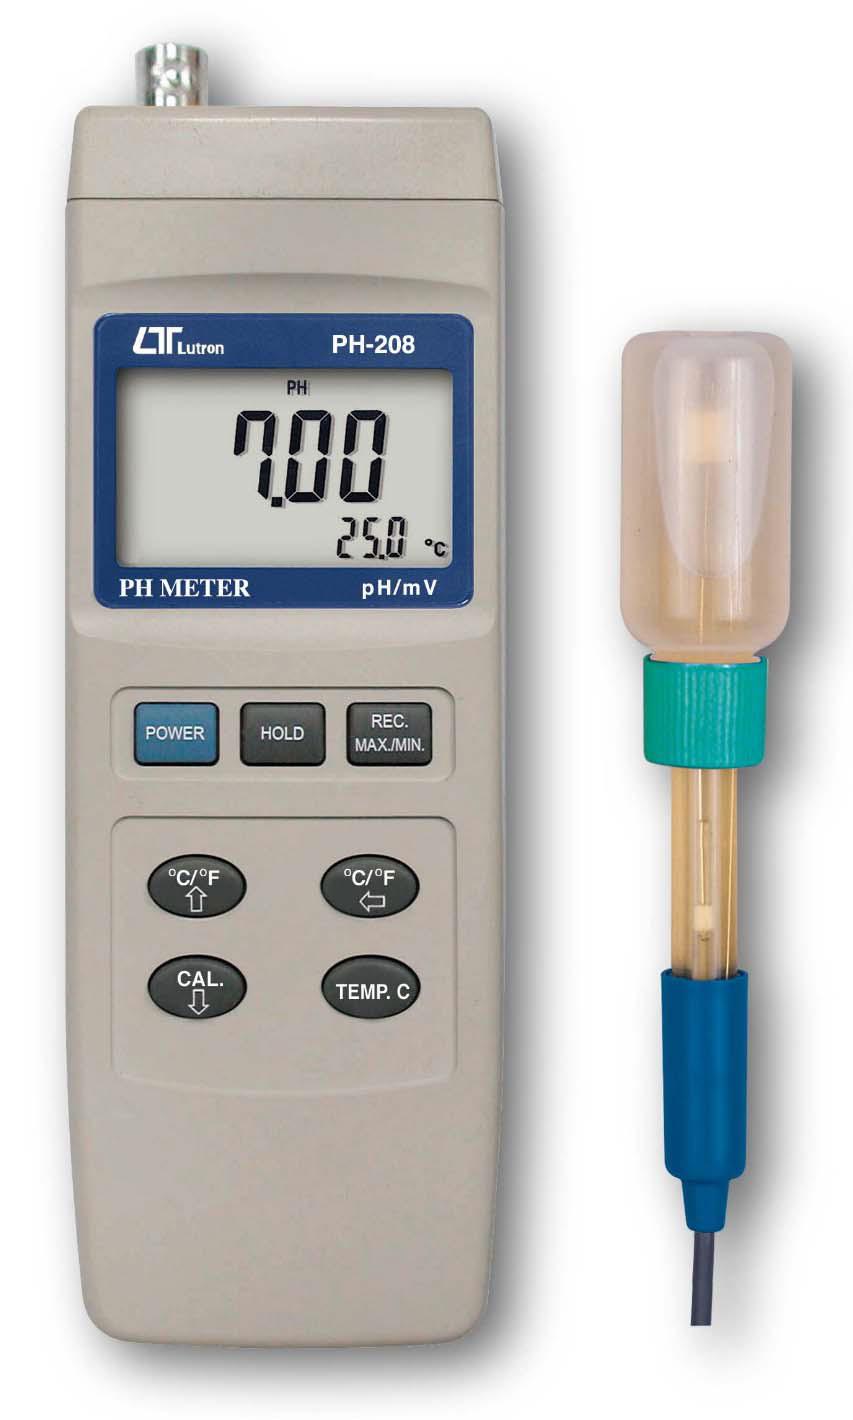 بسمه تعالیَ<br/><br/>دستگاه اسیدسنج لوترون مدل PH-208 اغلب در آزمایشگاه های شیمی و در سایر صنایع که اندازه گیری میزان اسید آن مورد نیاز باشد مورد استفاده قرار industry chemical chemical